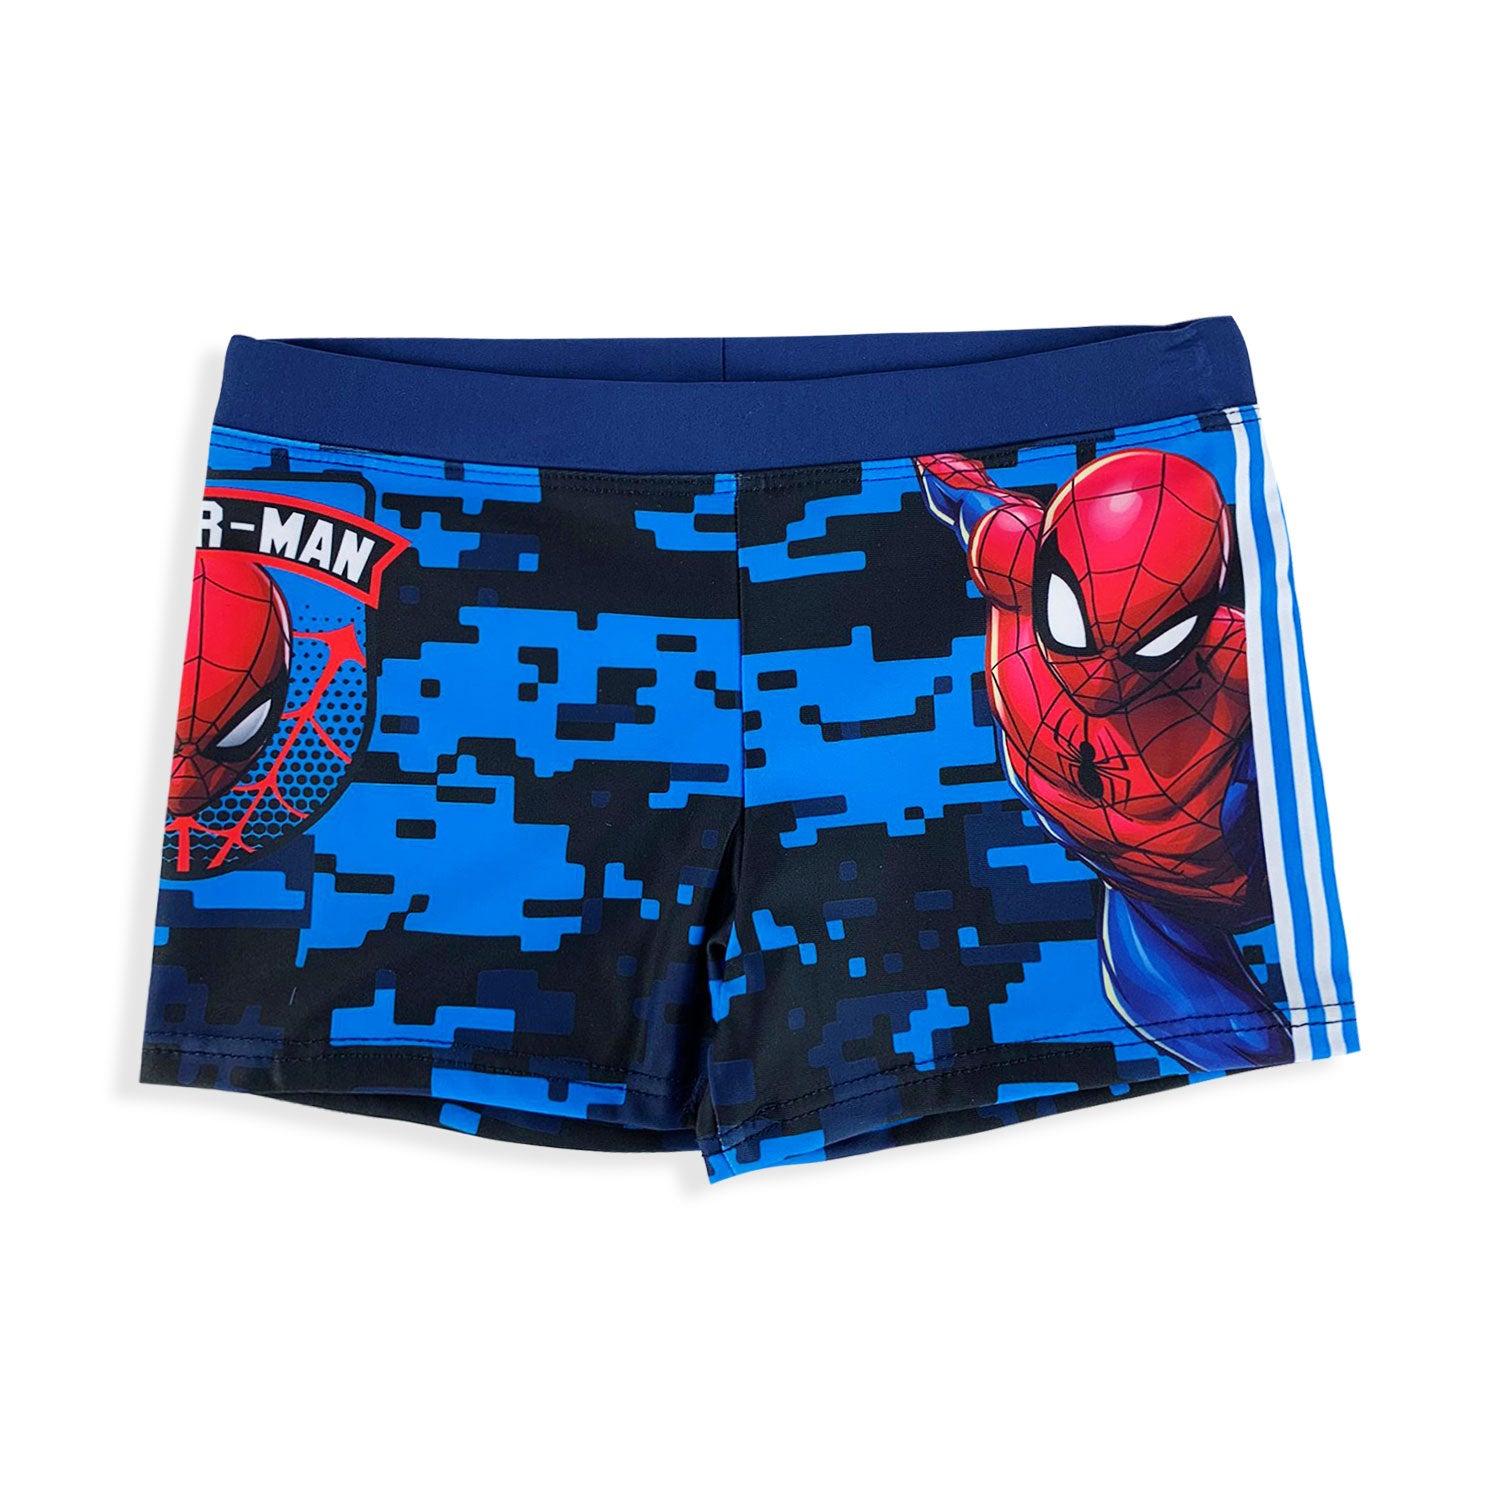 Costume mare Marvel Spiderman ufficiale pantaloncino boxer bimbo piscina 5347